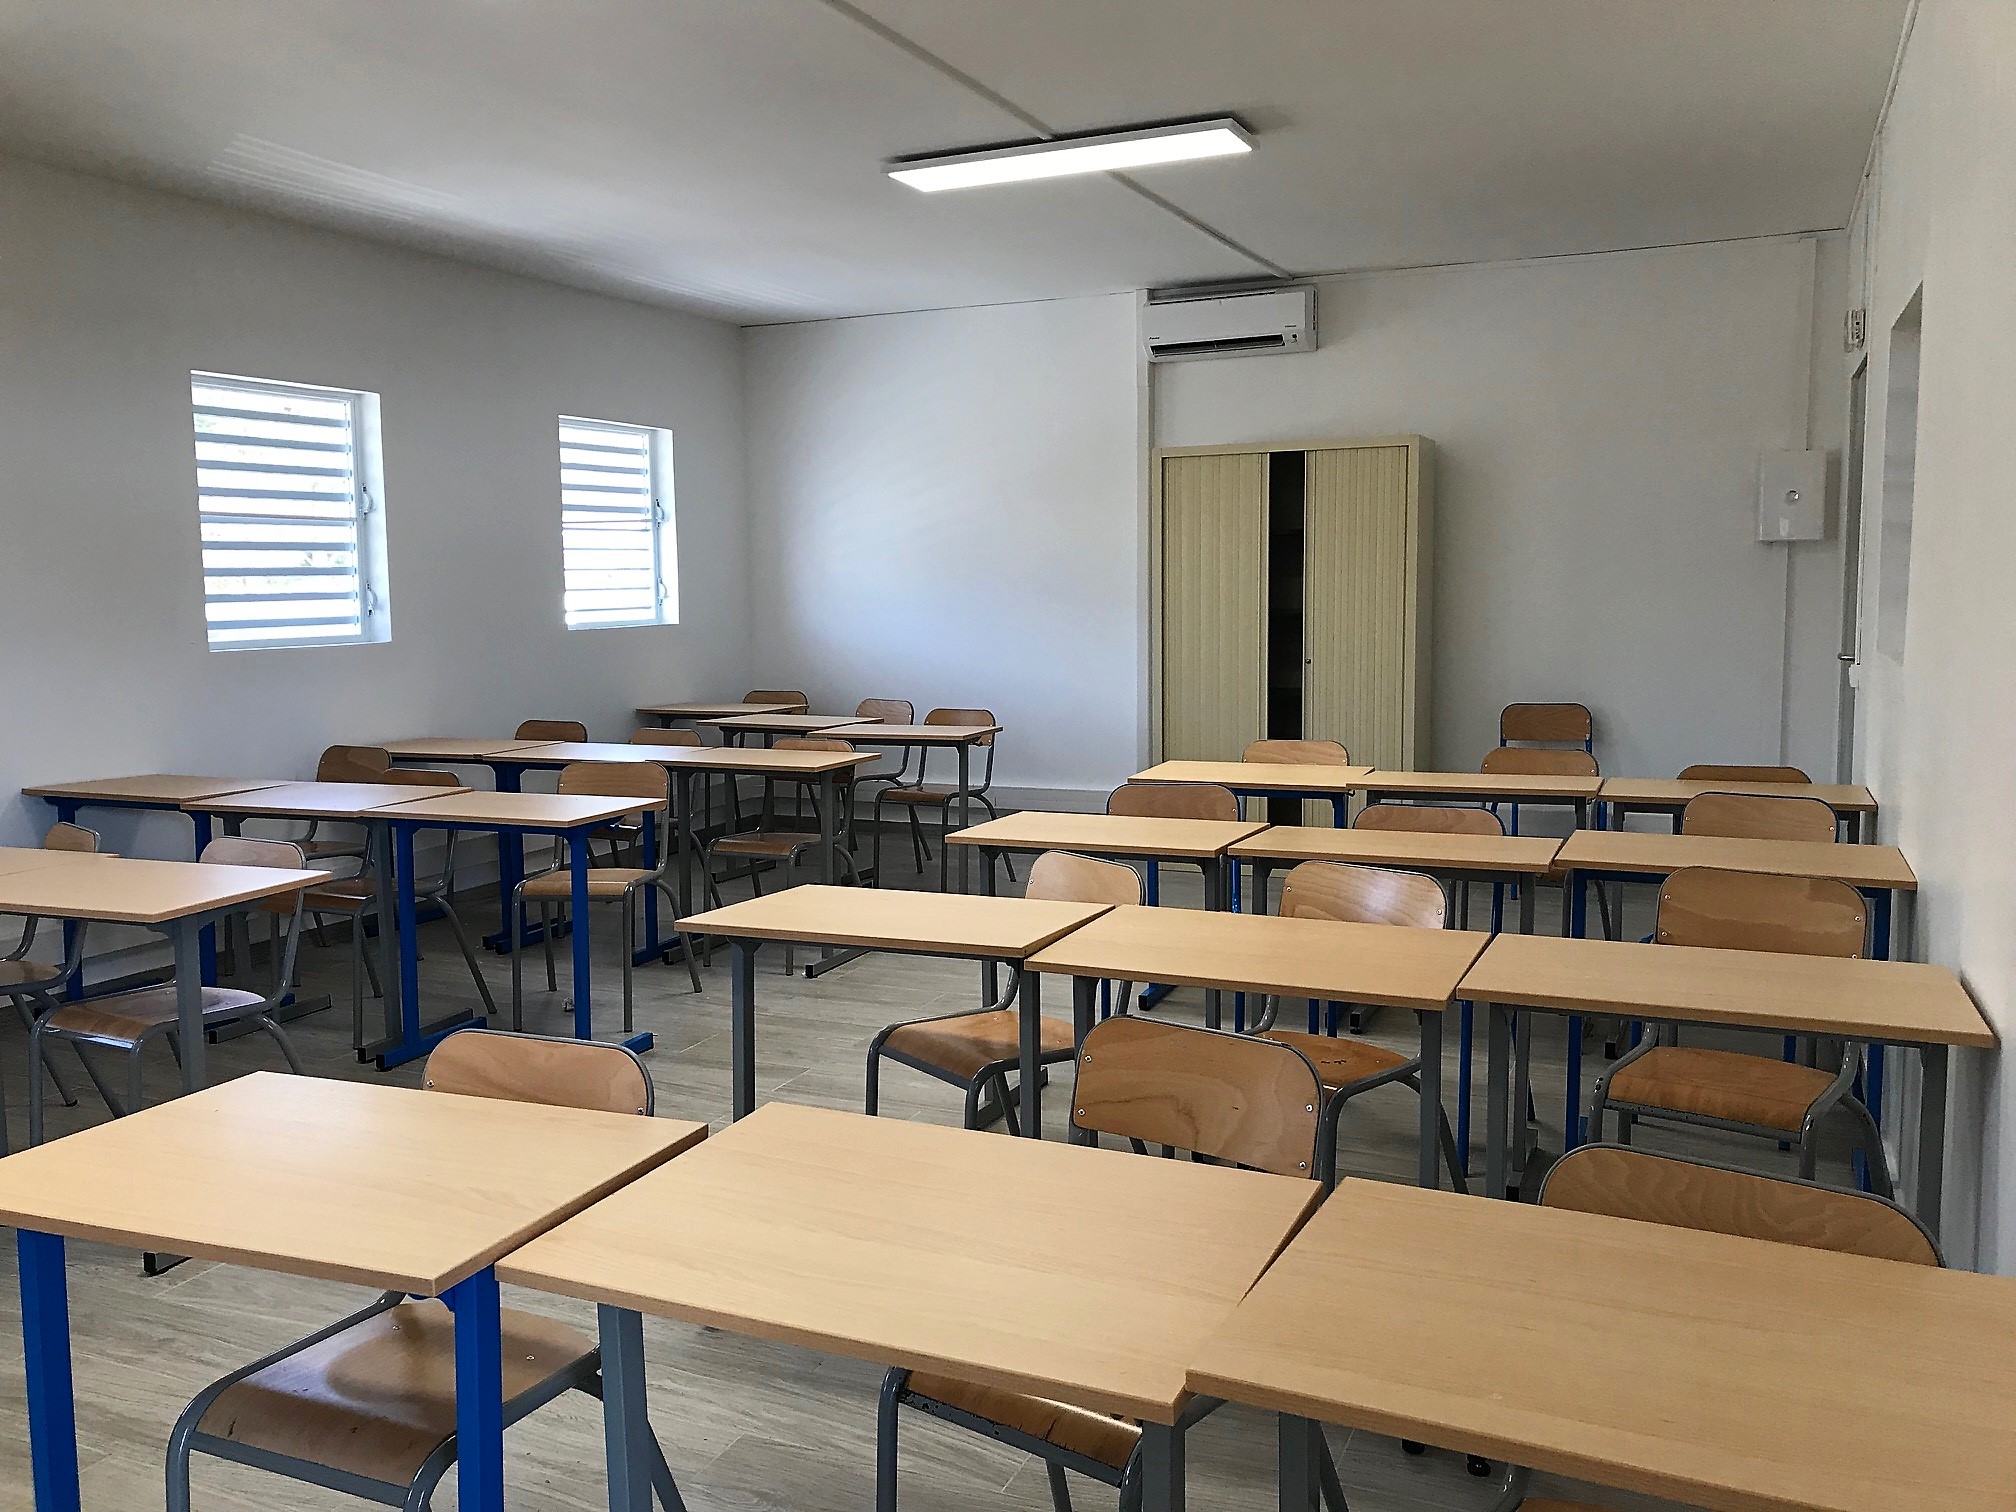 Les classes modulaires de la CitÃƒÂ© scolaire ouvertes aux collÃƒÂ©giens de Soualiga